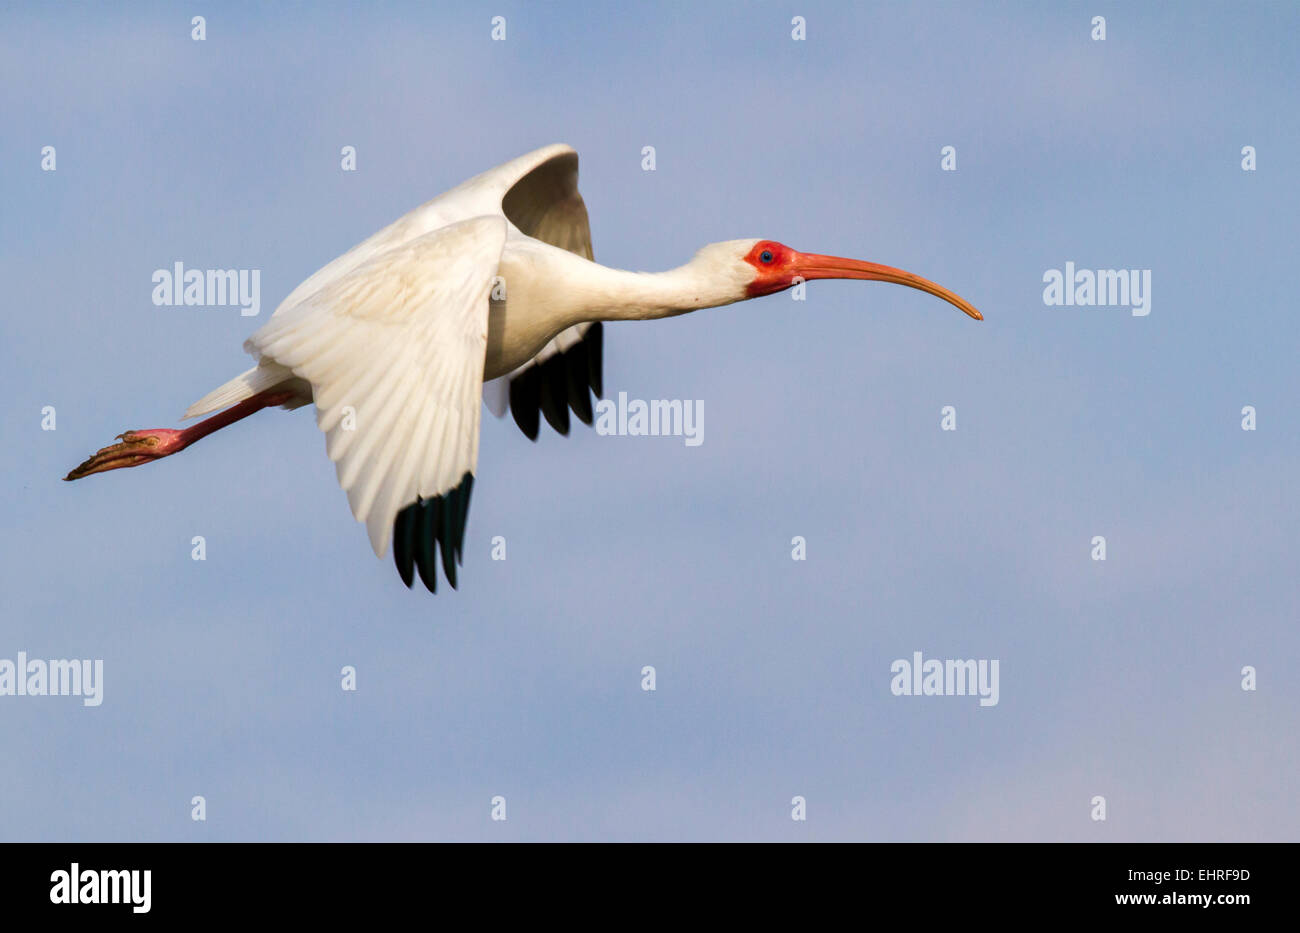 American white ibis (Eudocimus albus) flying, Galveston, Texas, USA. Stock Photo